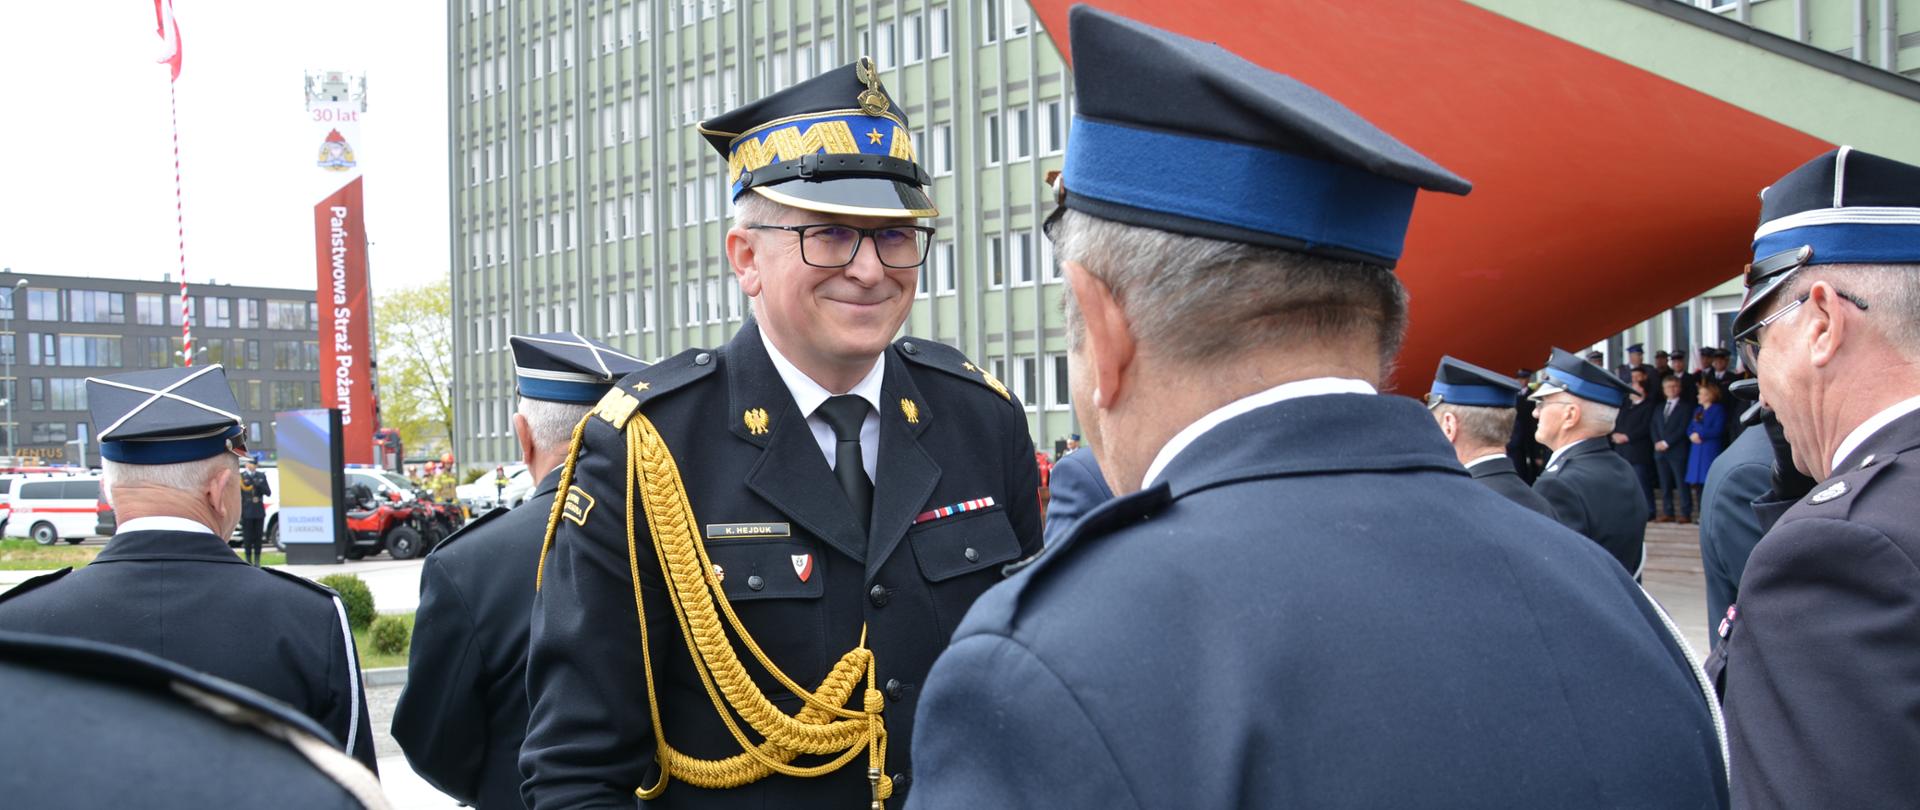 Na zdjęciu widzimy mężczyznę w mundurze generalskim PSP uśmiechającego się do stojącego tyłem strażaka OSP.